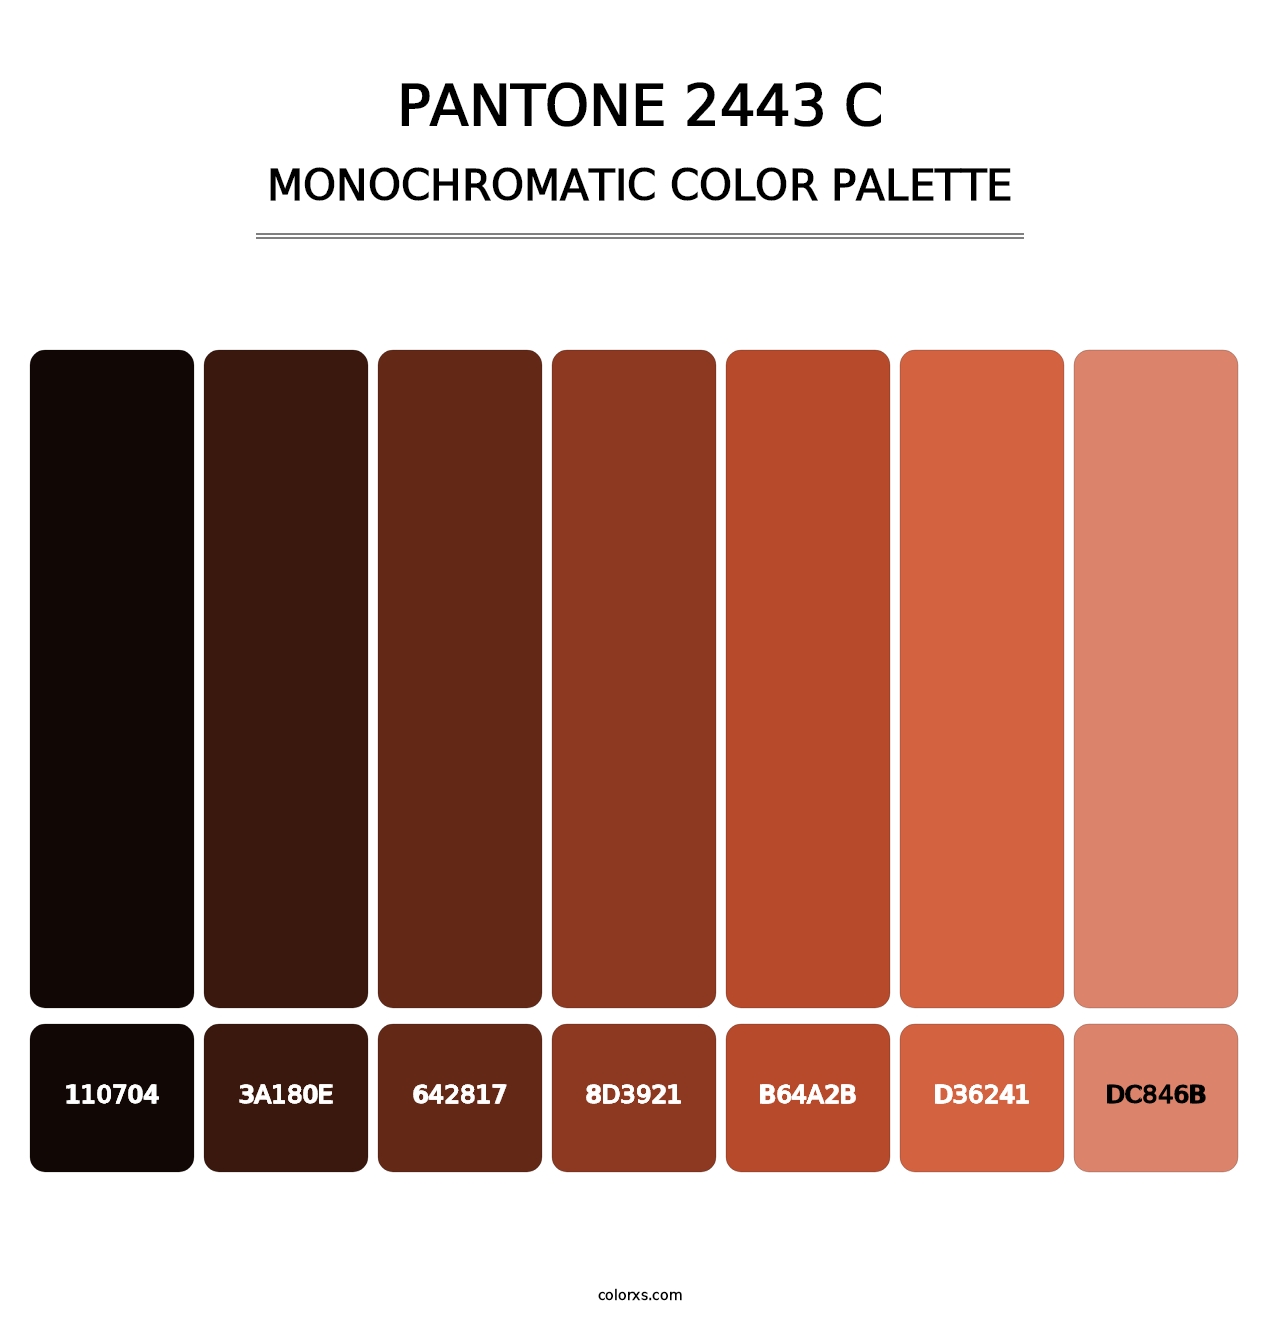 PANTONE 2443 C - Monochromatic Color Palette